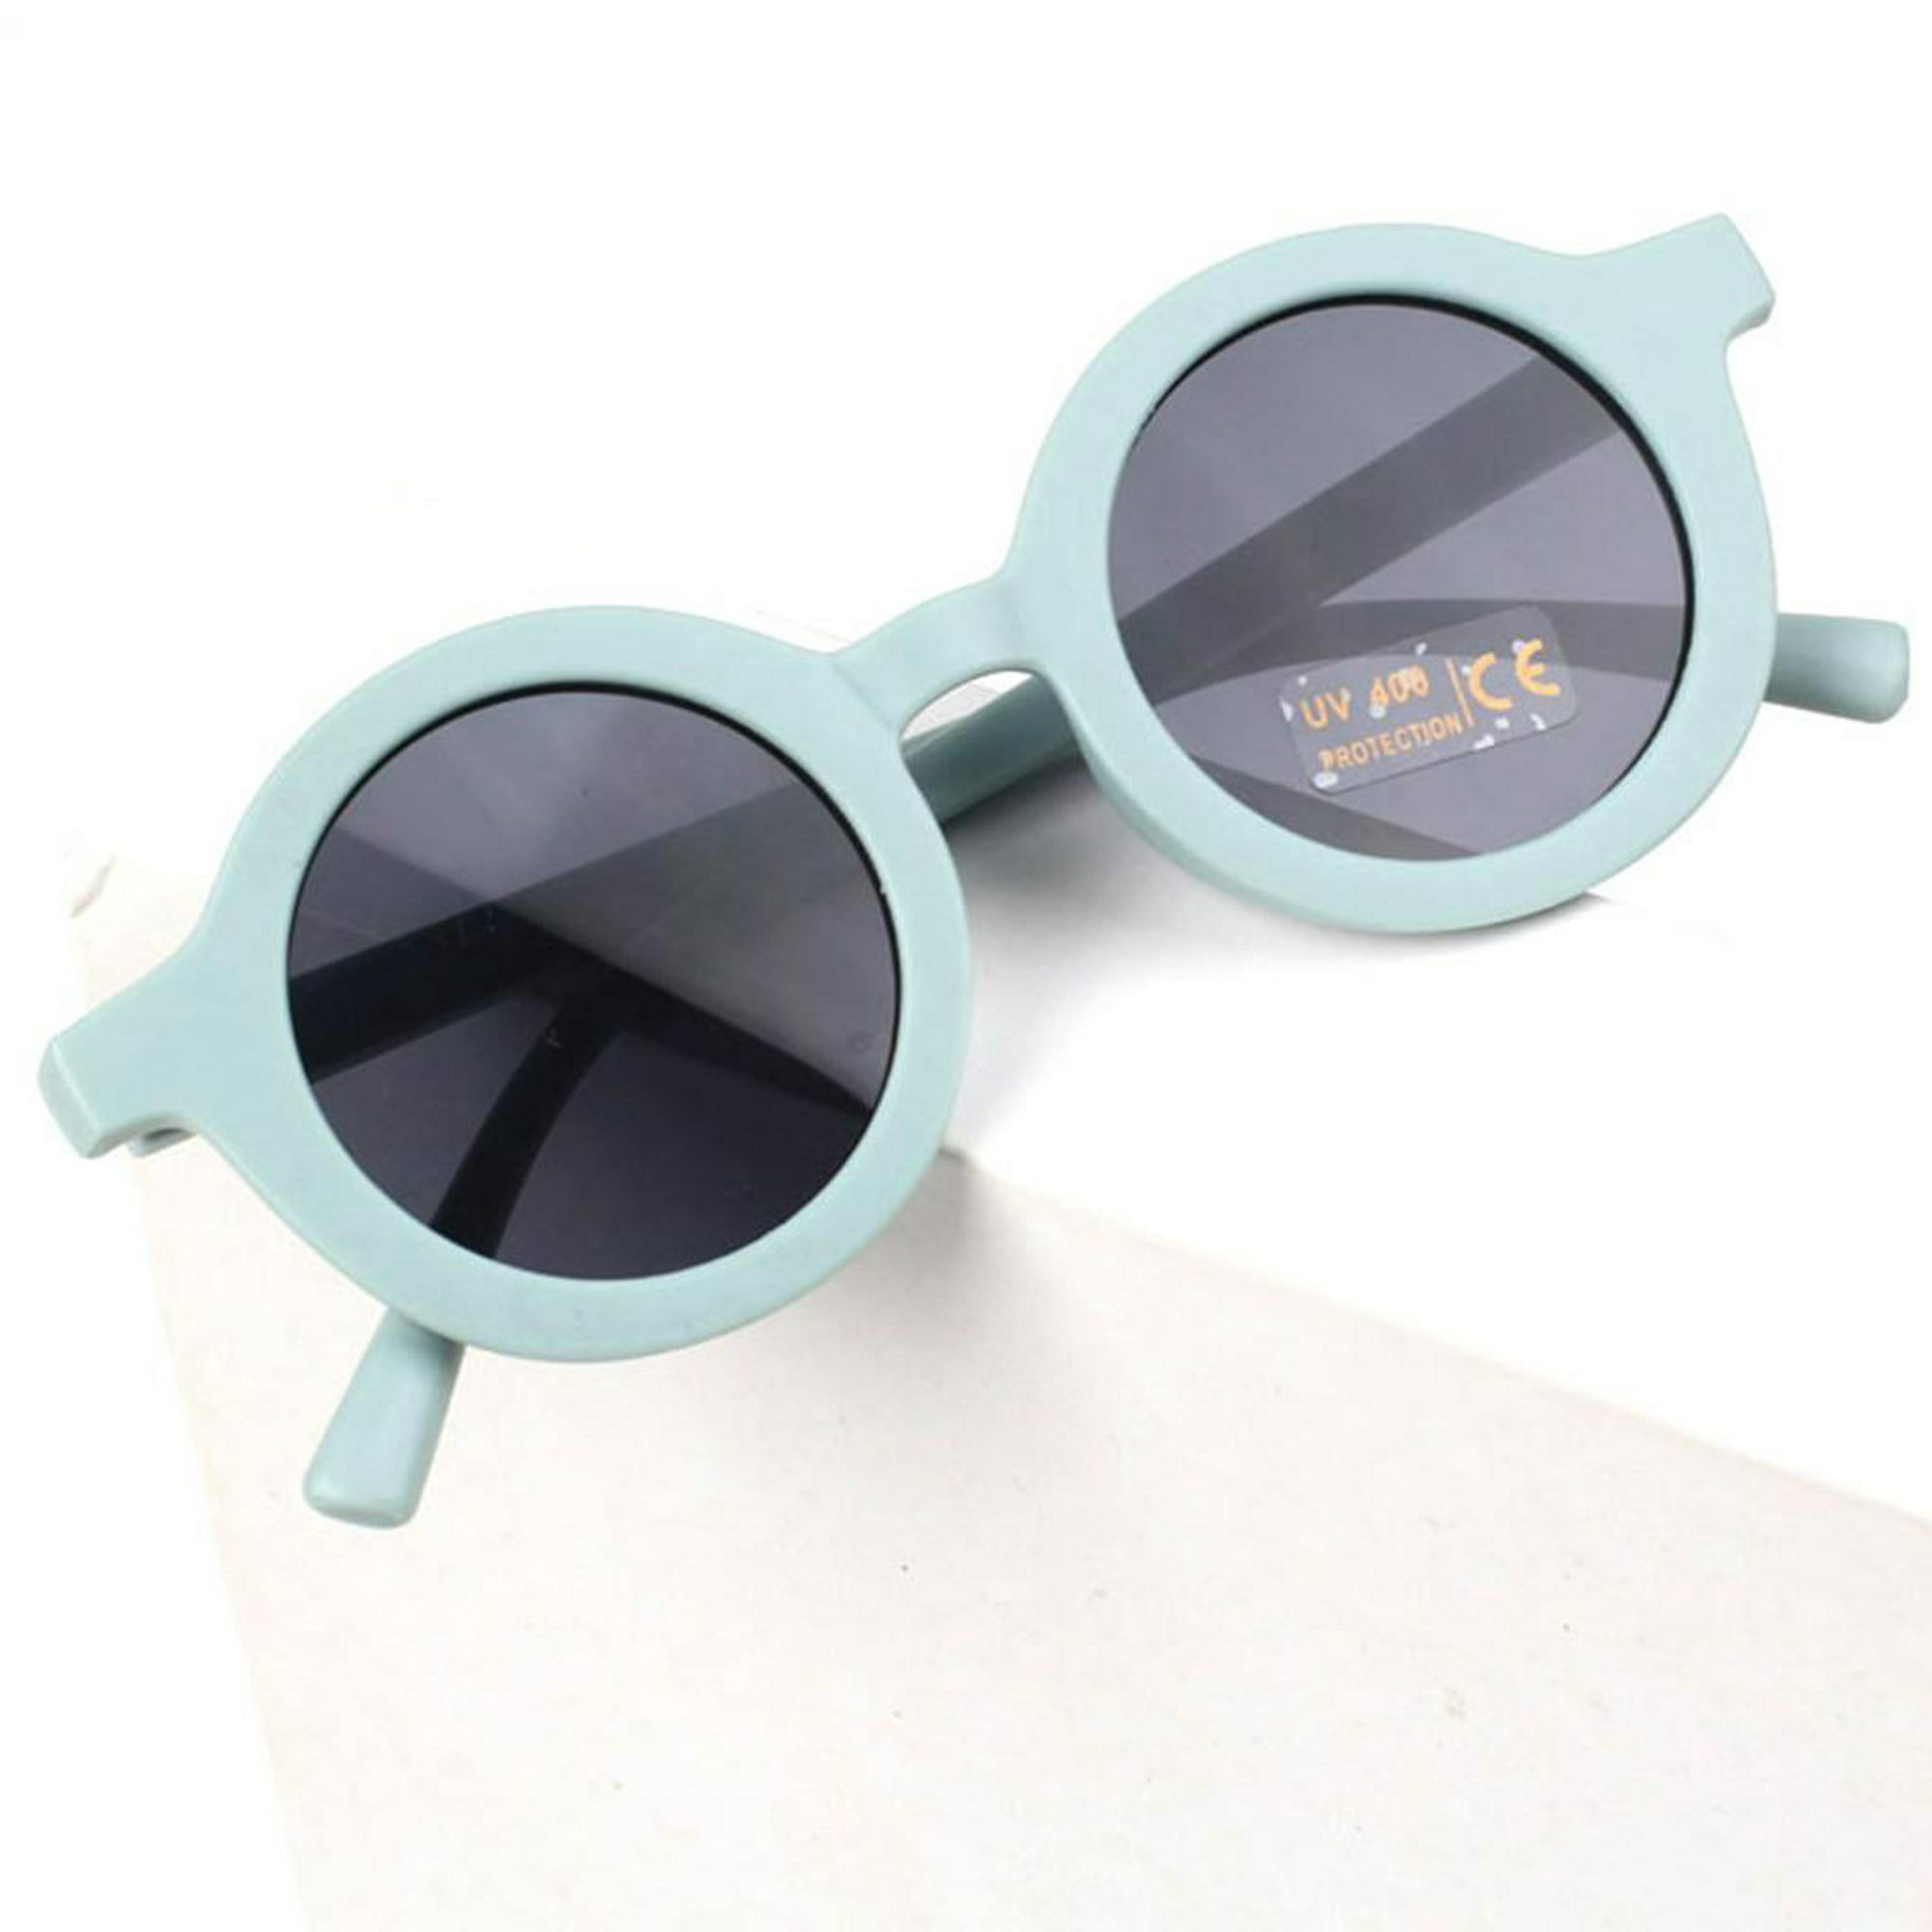 Steampunk - Gafas de sol redondas de moda para hombre, gafas punk de lujo,  retro, huecas, de moda, color rosa y azul